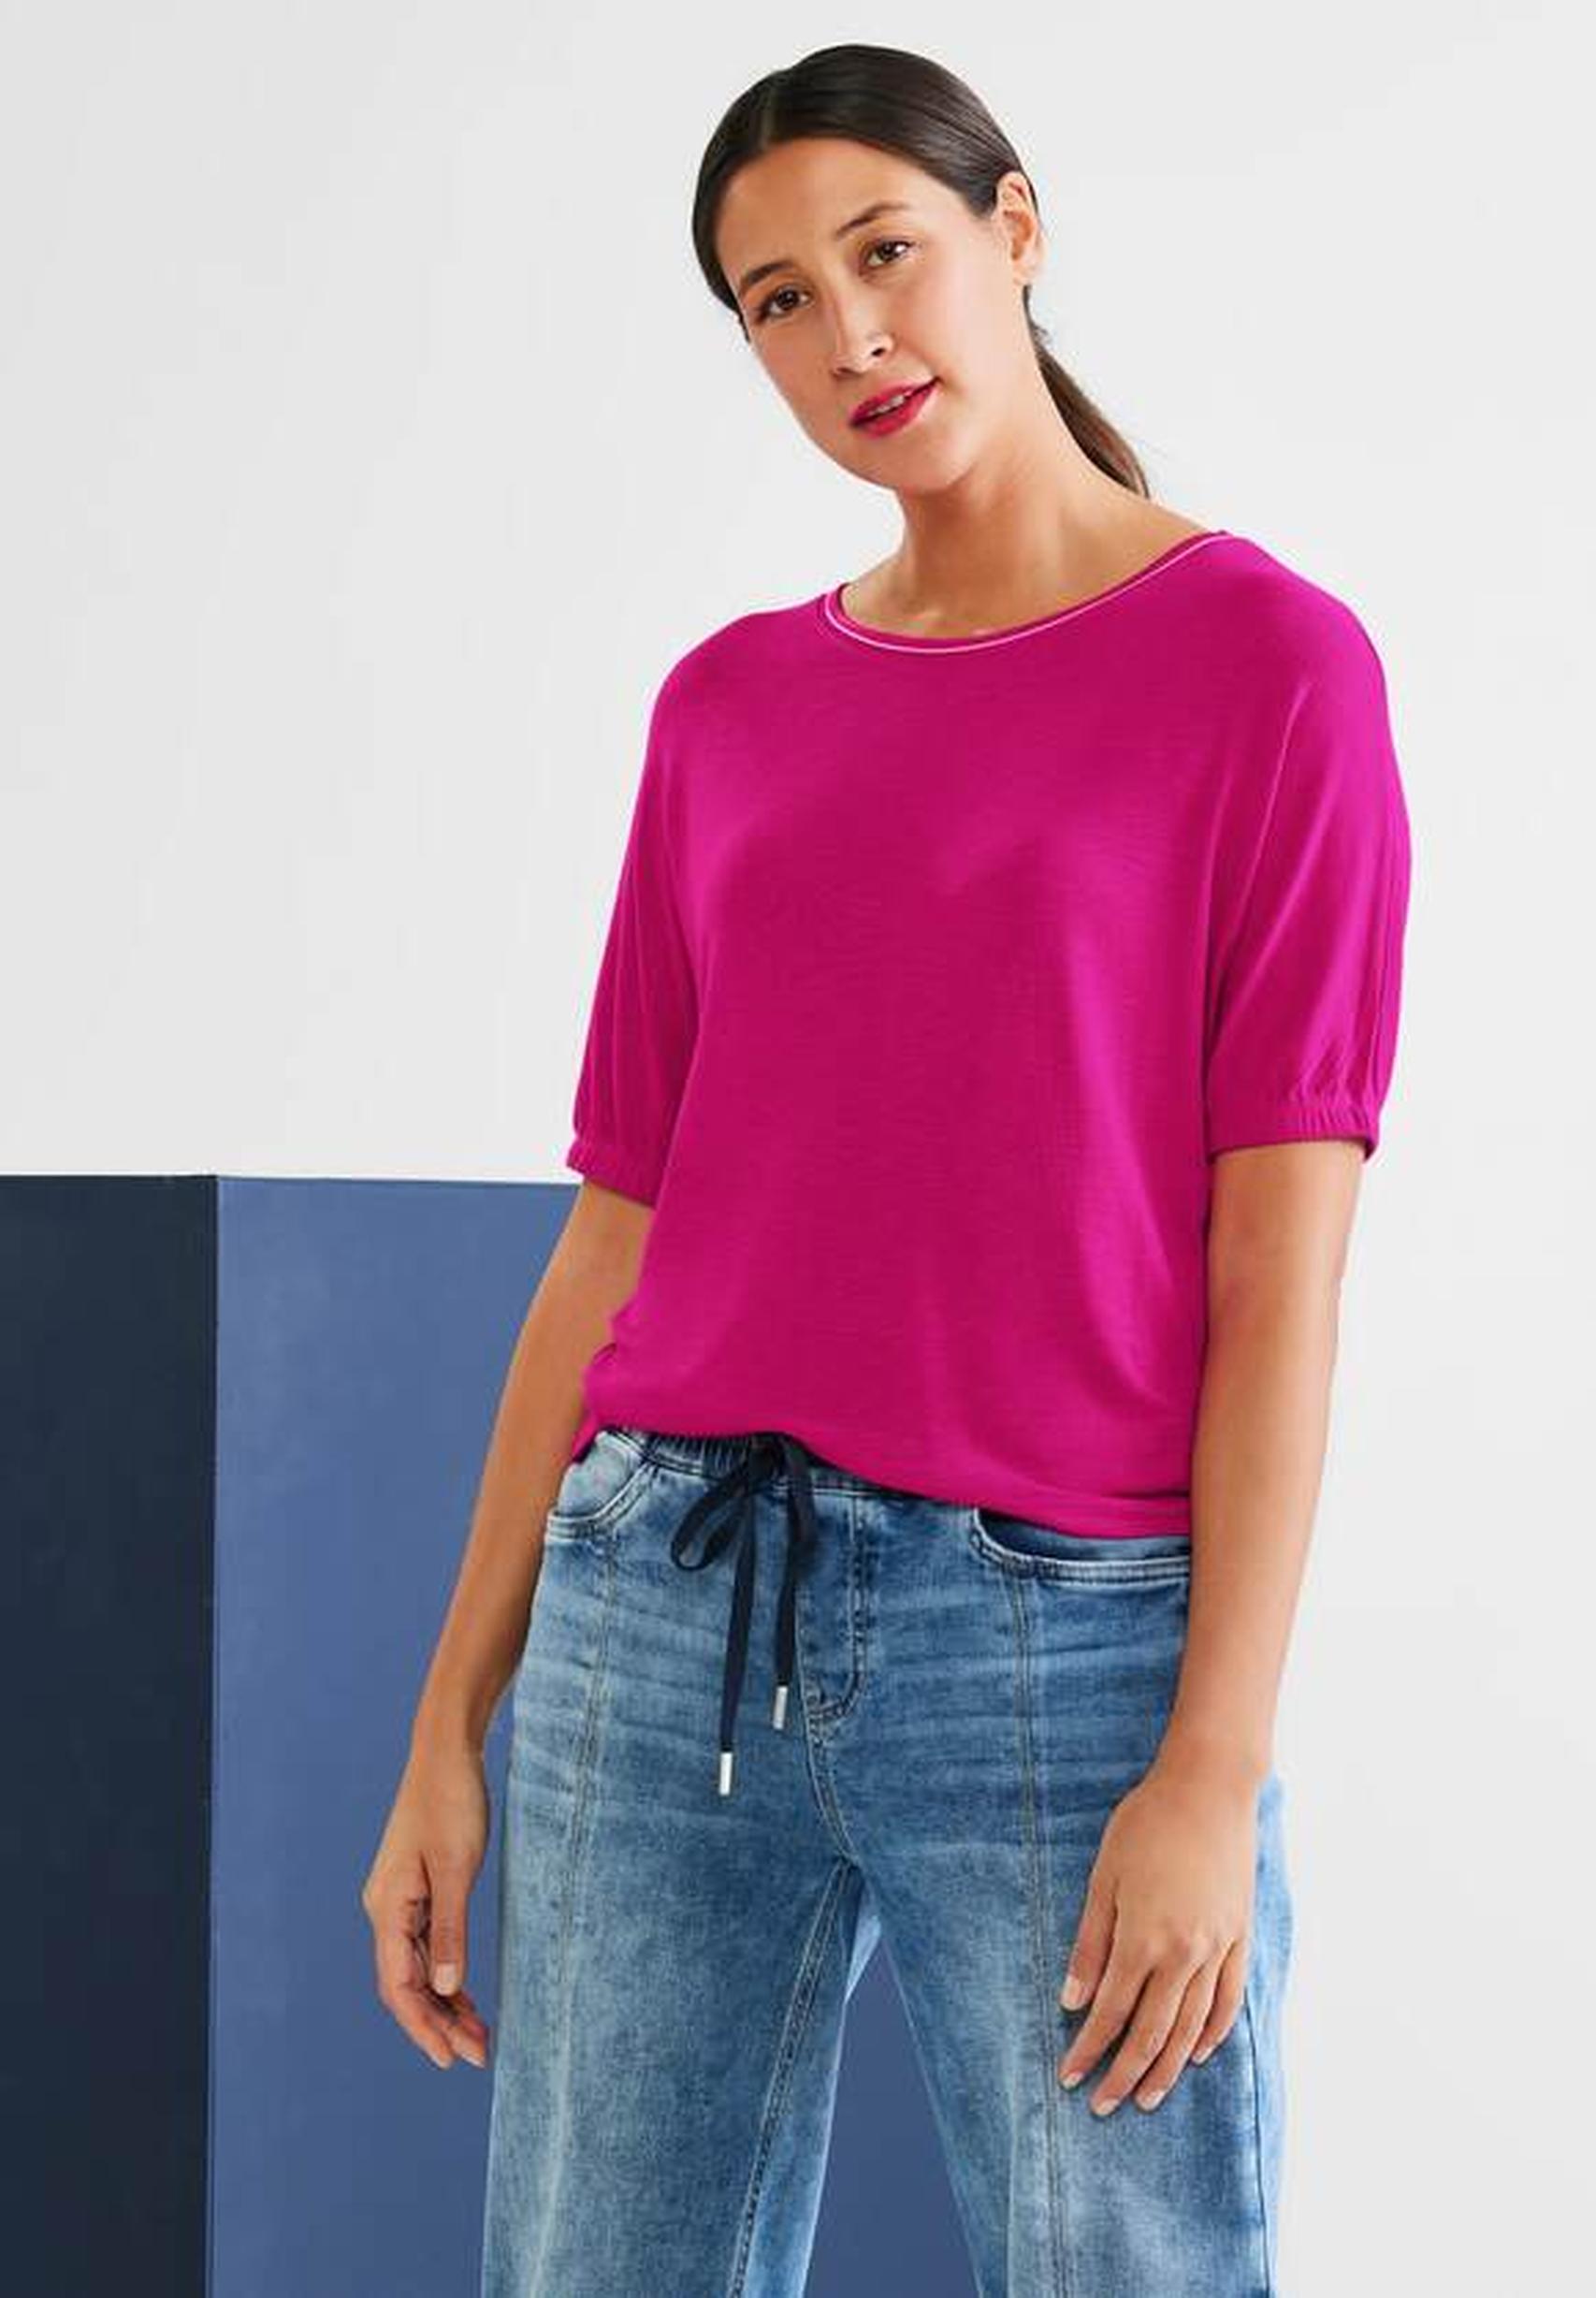 Modisches Strickshirt aus der Kollektion von Street One in pink | T-Shirts